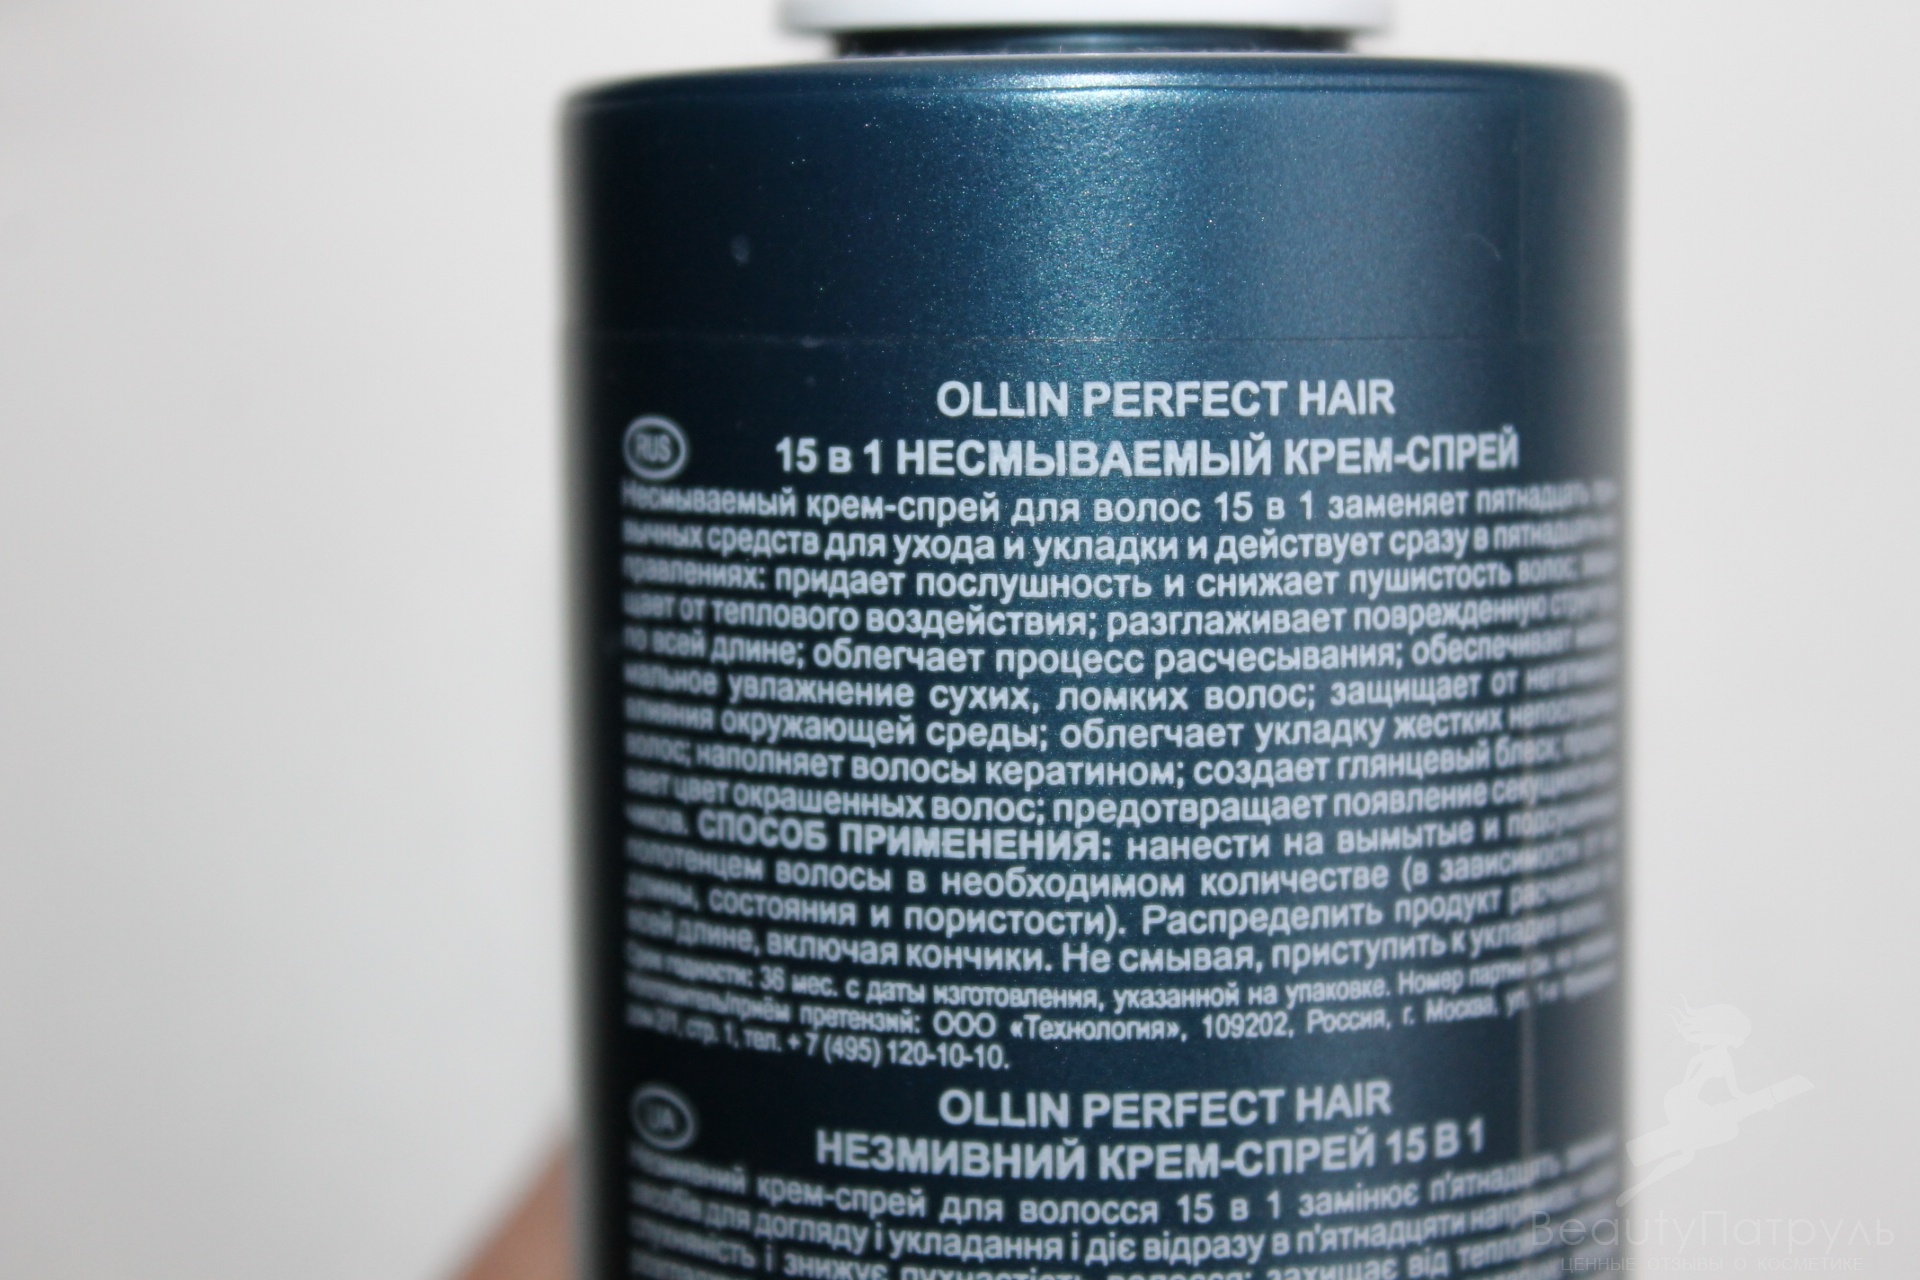 Мое мнение о несмываемом крем-спрее 15 в 1 Ollin Perfect hair